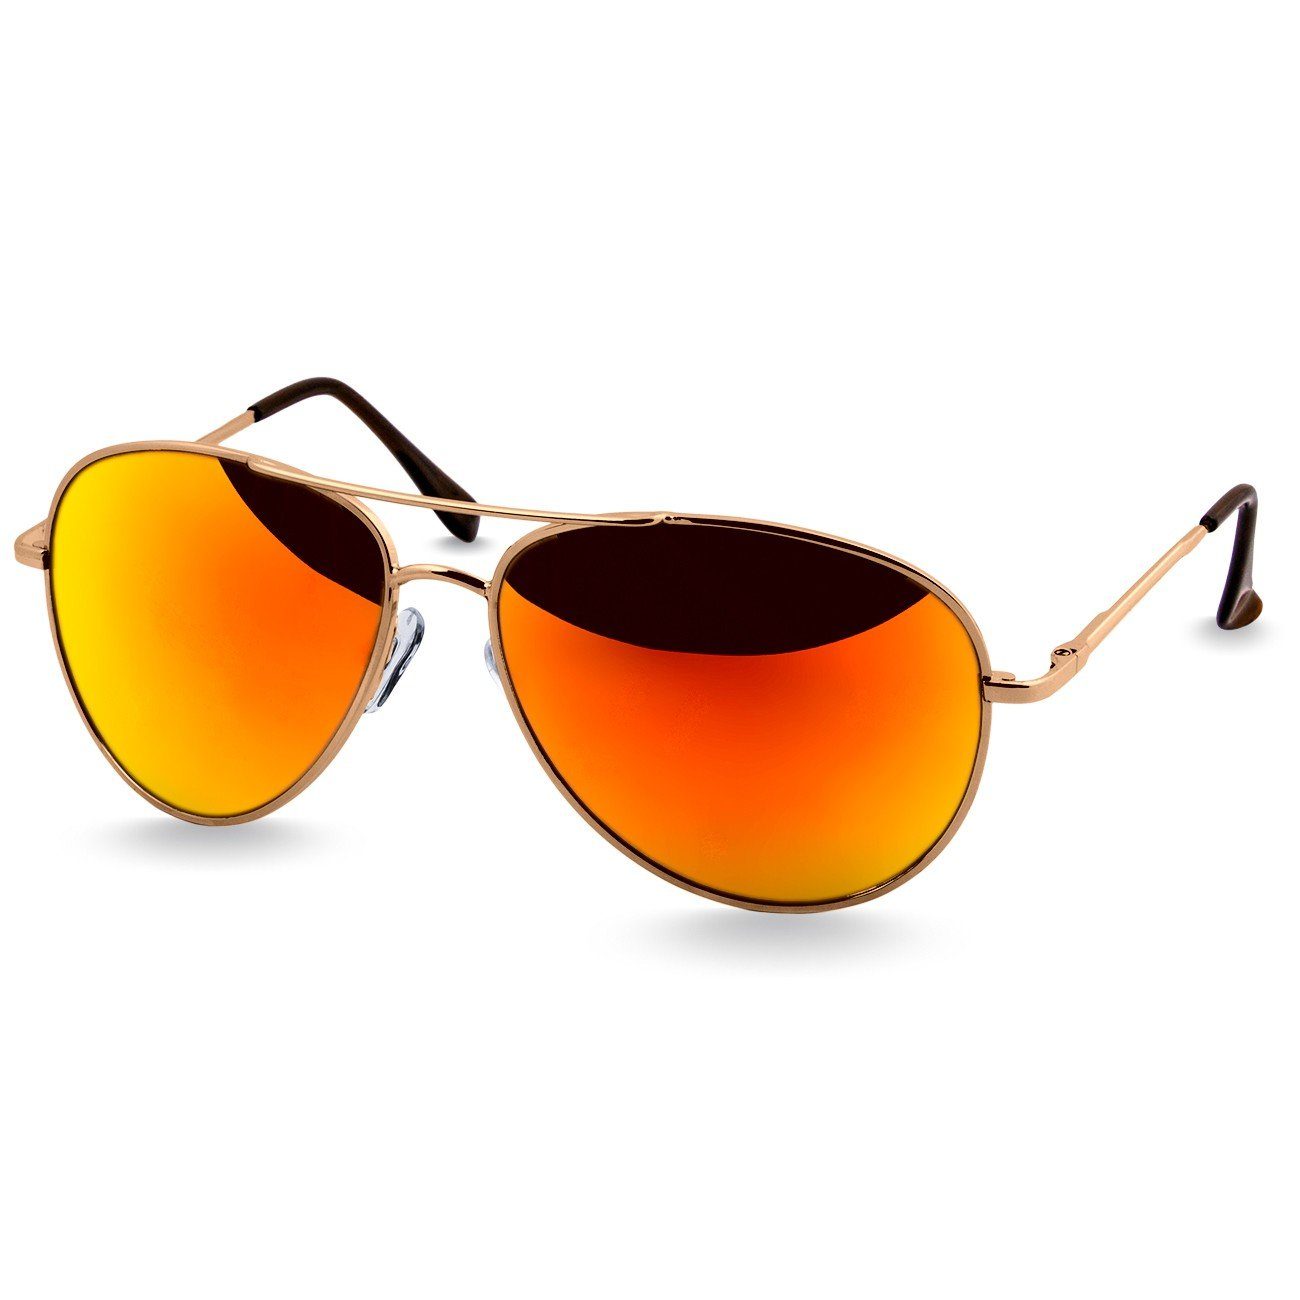 Caspar Sonnenbrille SG013 klassische Pilotenbrille verspiegelt lila gold / Unisex Retro